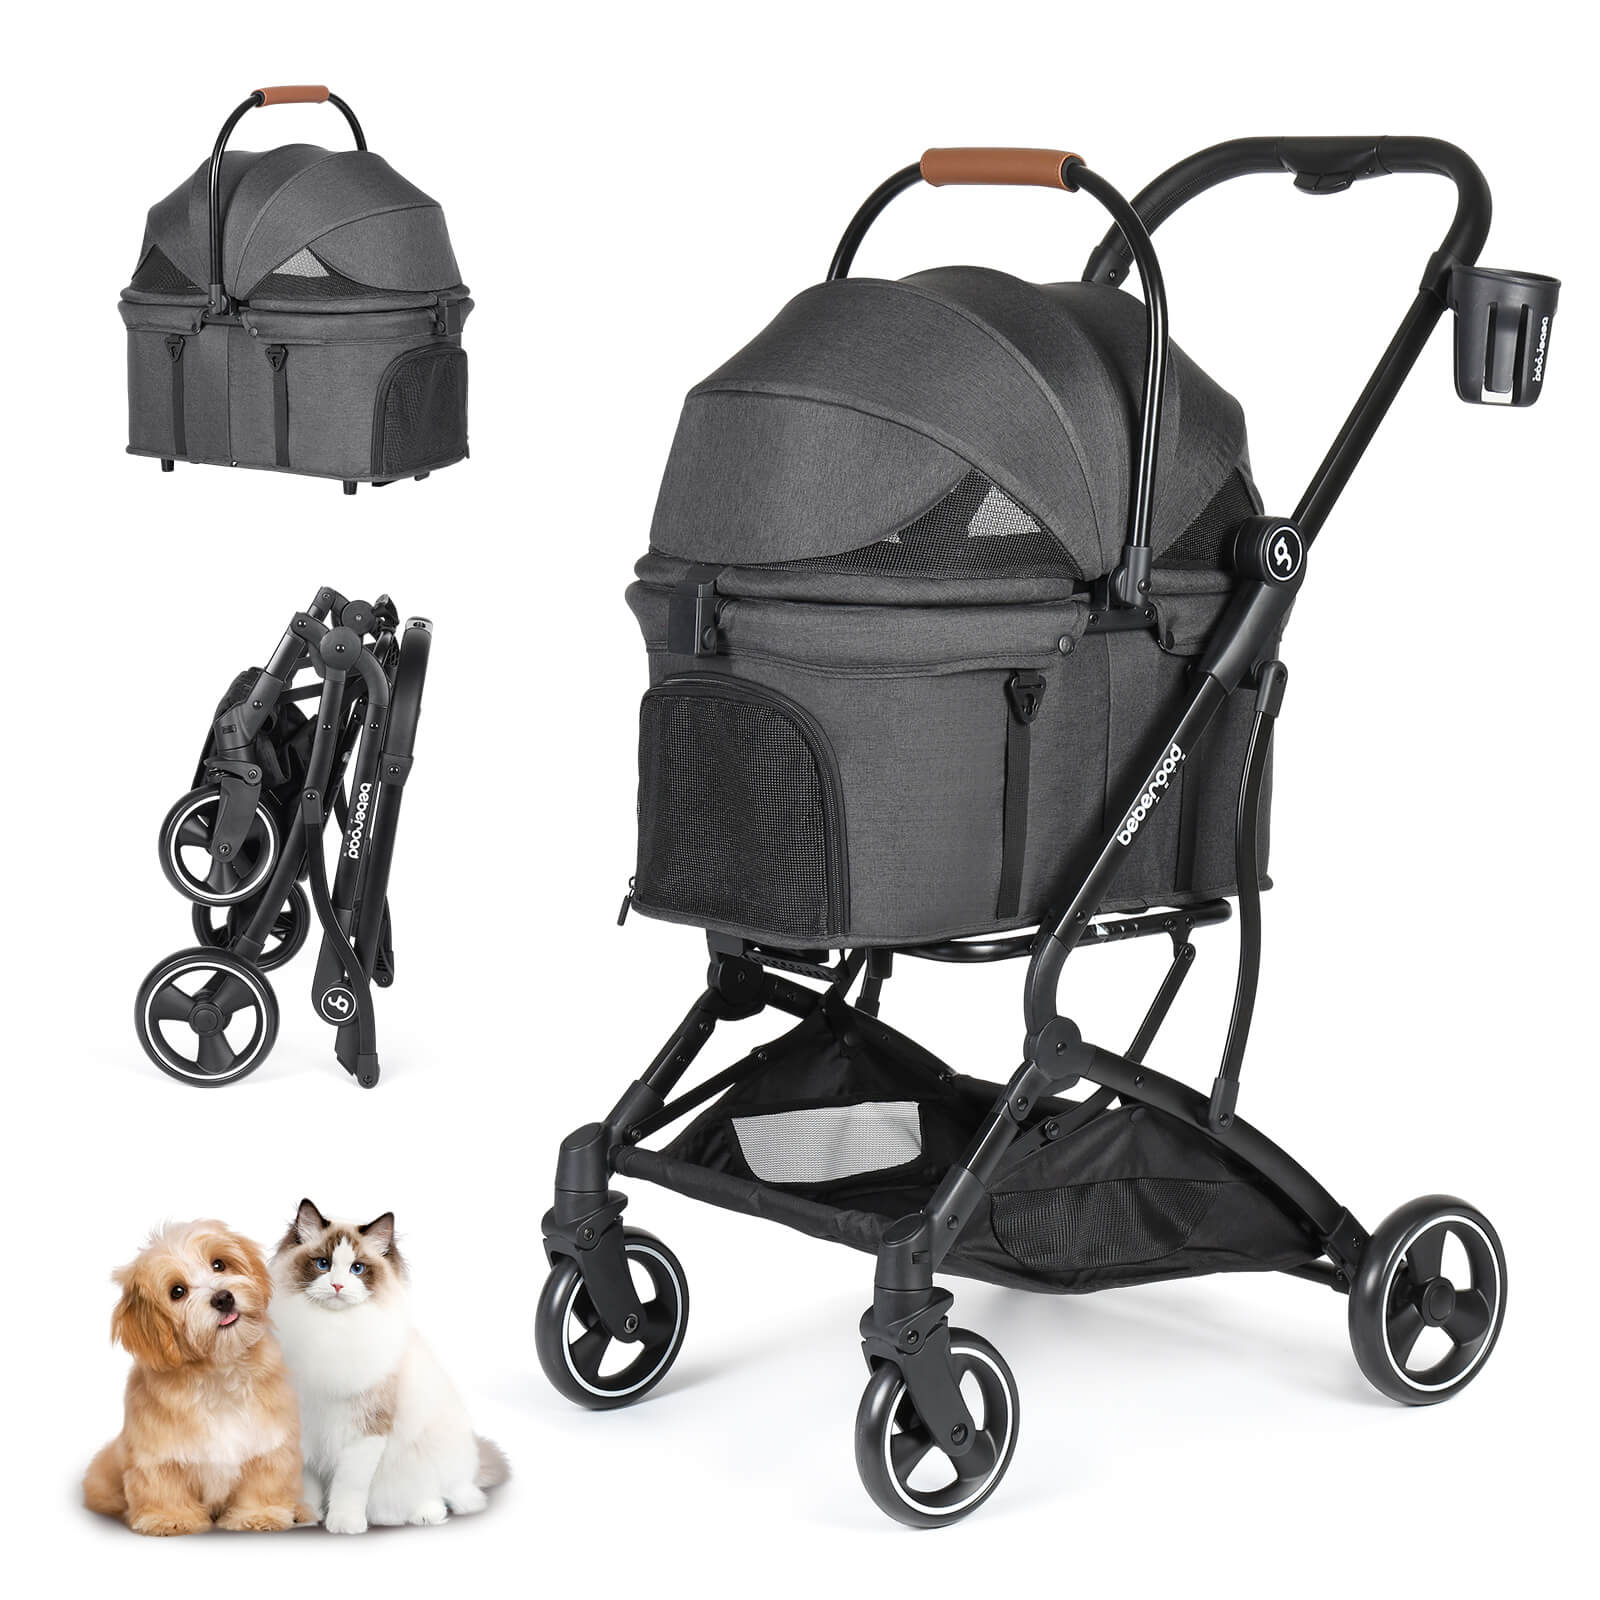 T3 3-in-1 Pet Stroller